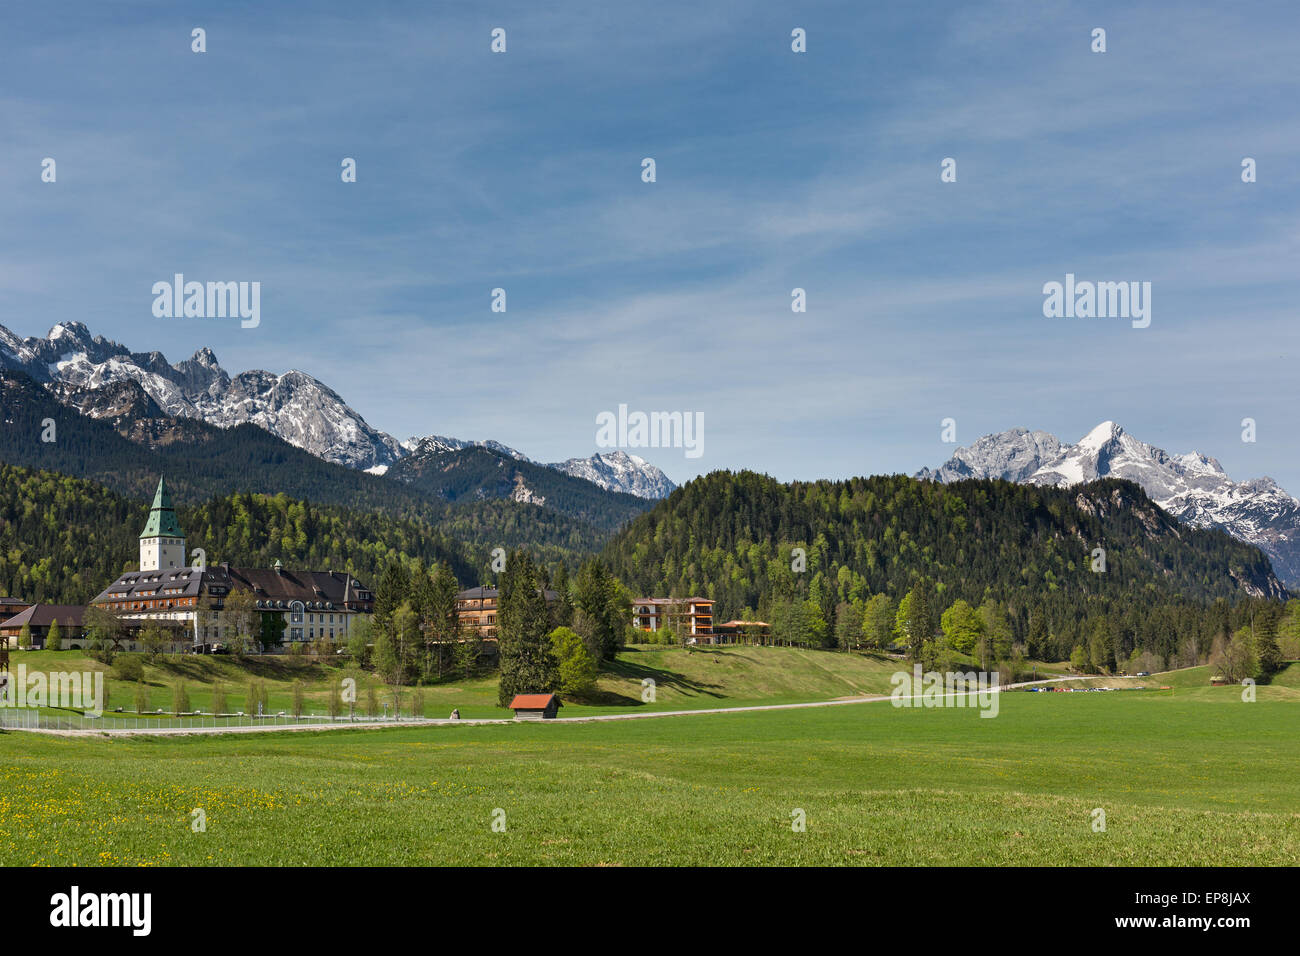 Schlosshotel Schloss Elmau, Veranstaltungsort des G7-Gipfels in 2015, Klais, Wetterstein, Werdenfelser Land, Oberbayern, Bayern Stockfoto